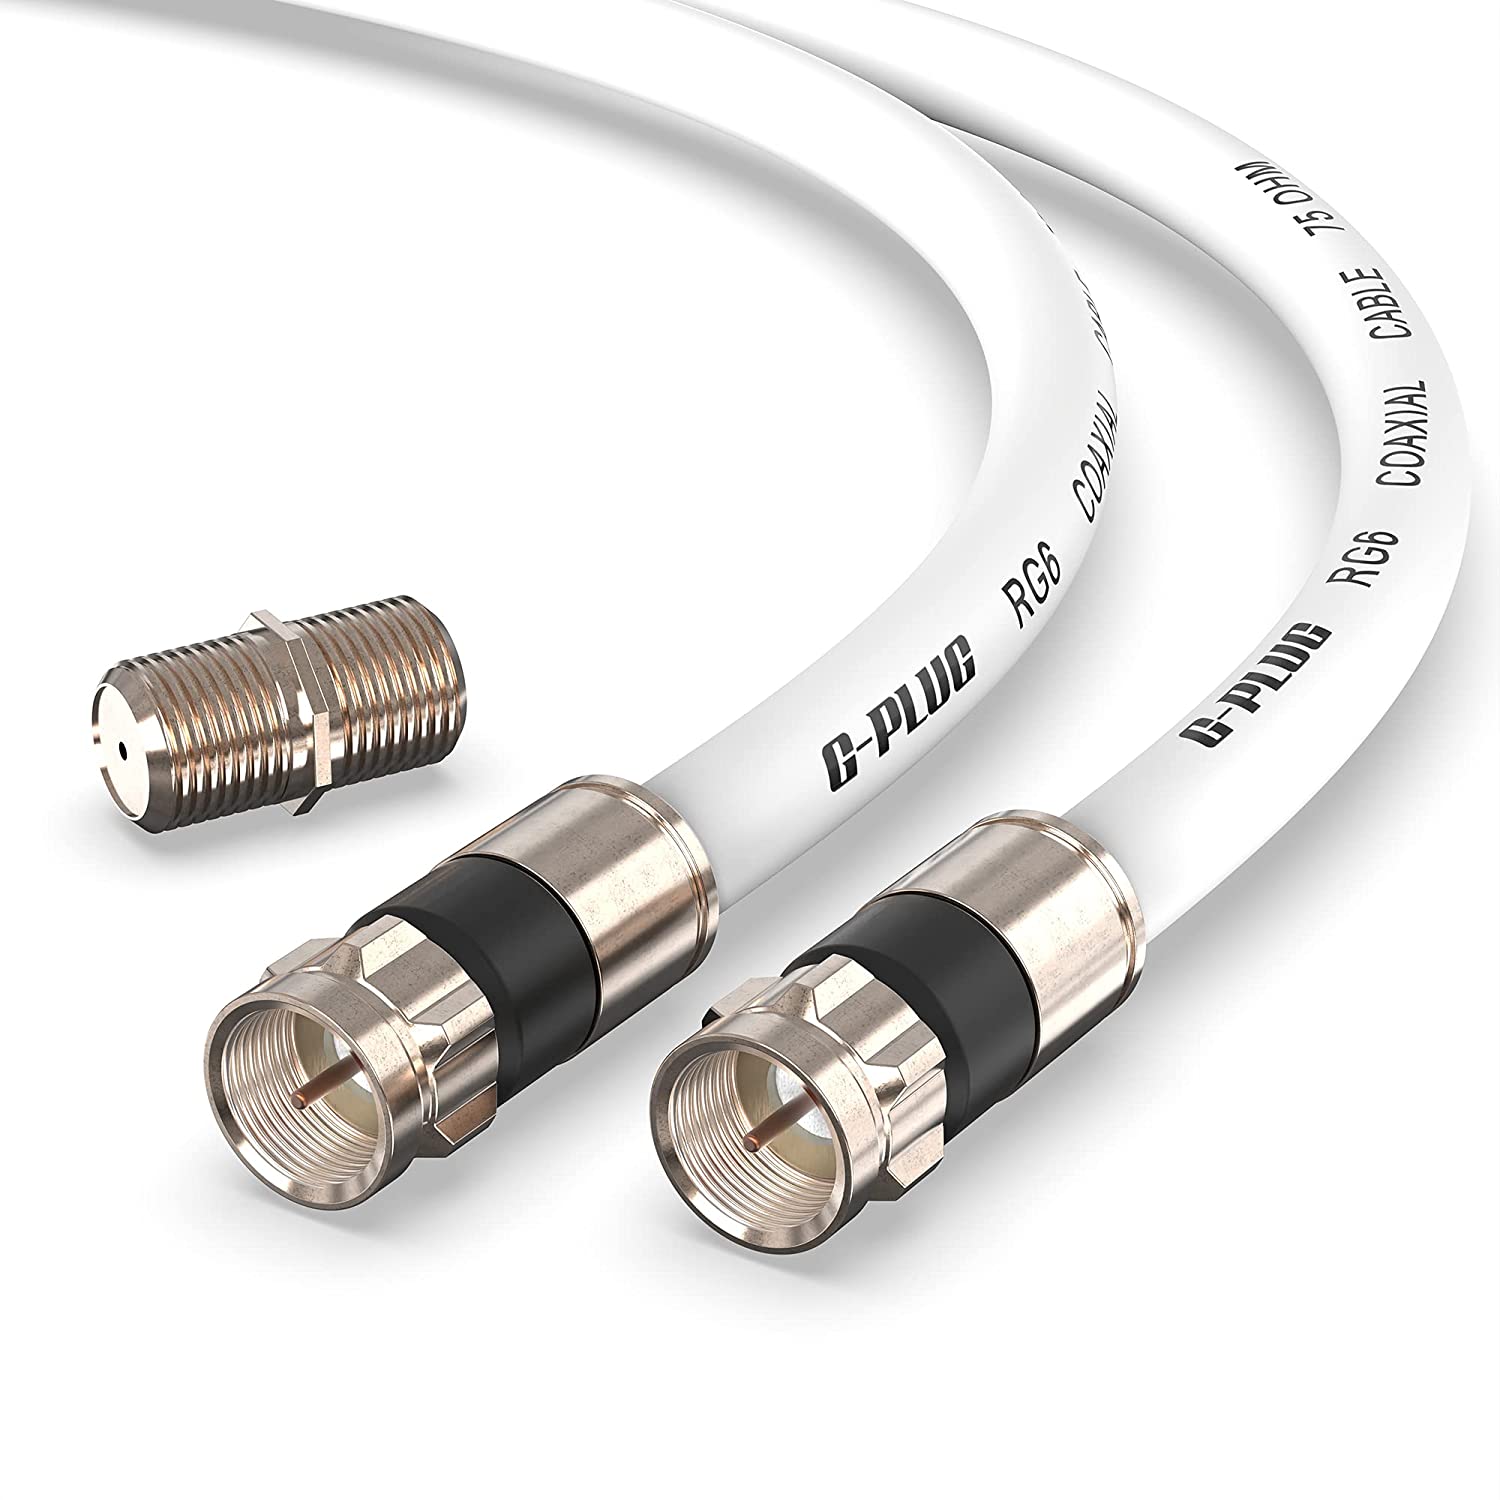 G-PLUG 6FT RG6 Coaxial Cable Connectors Set – High- [...]